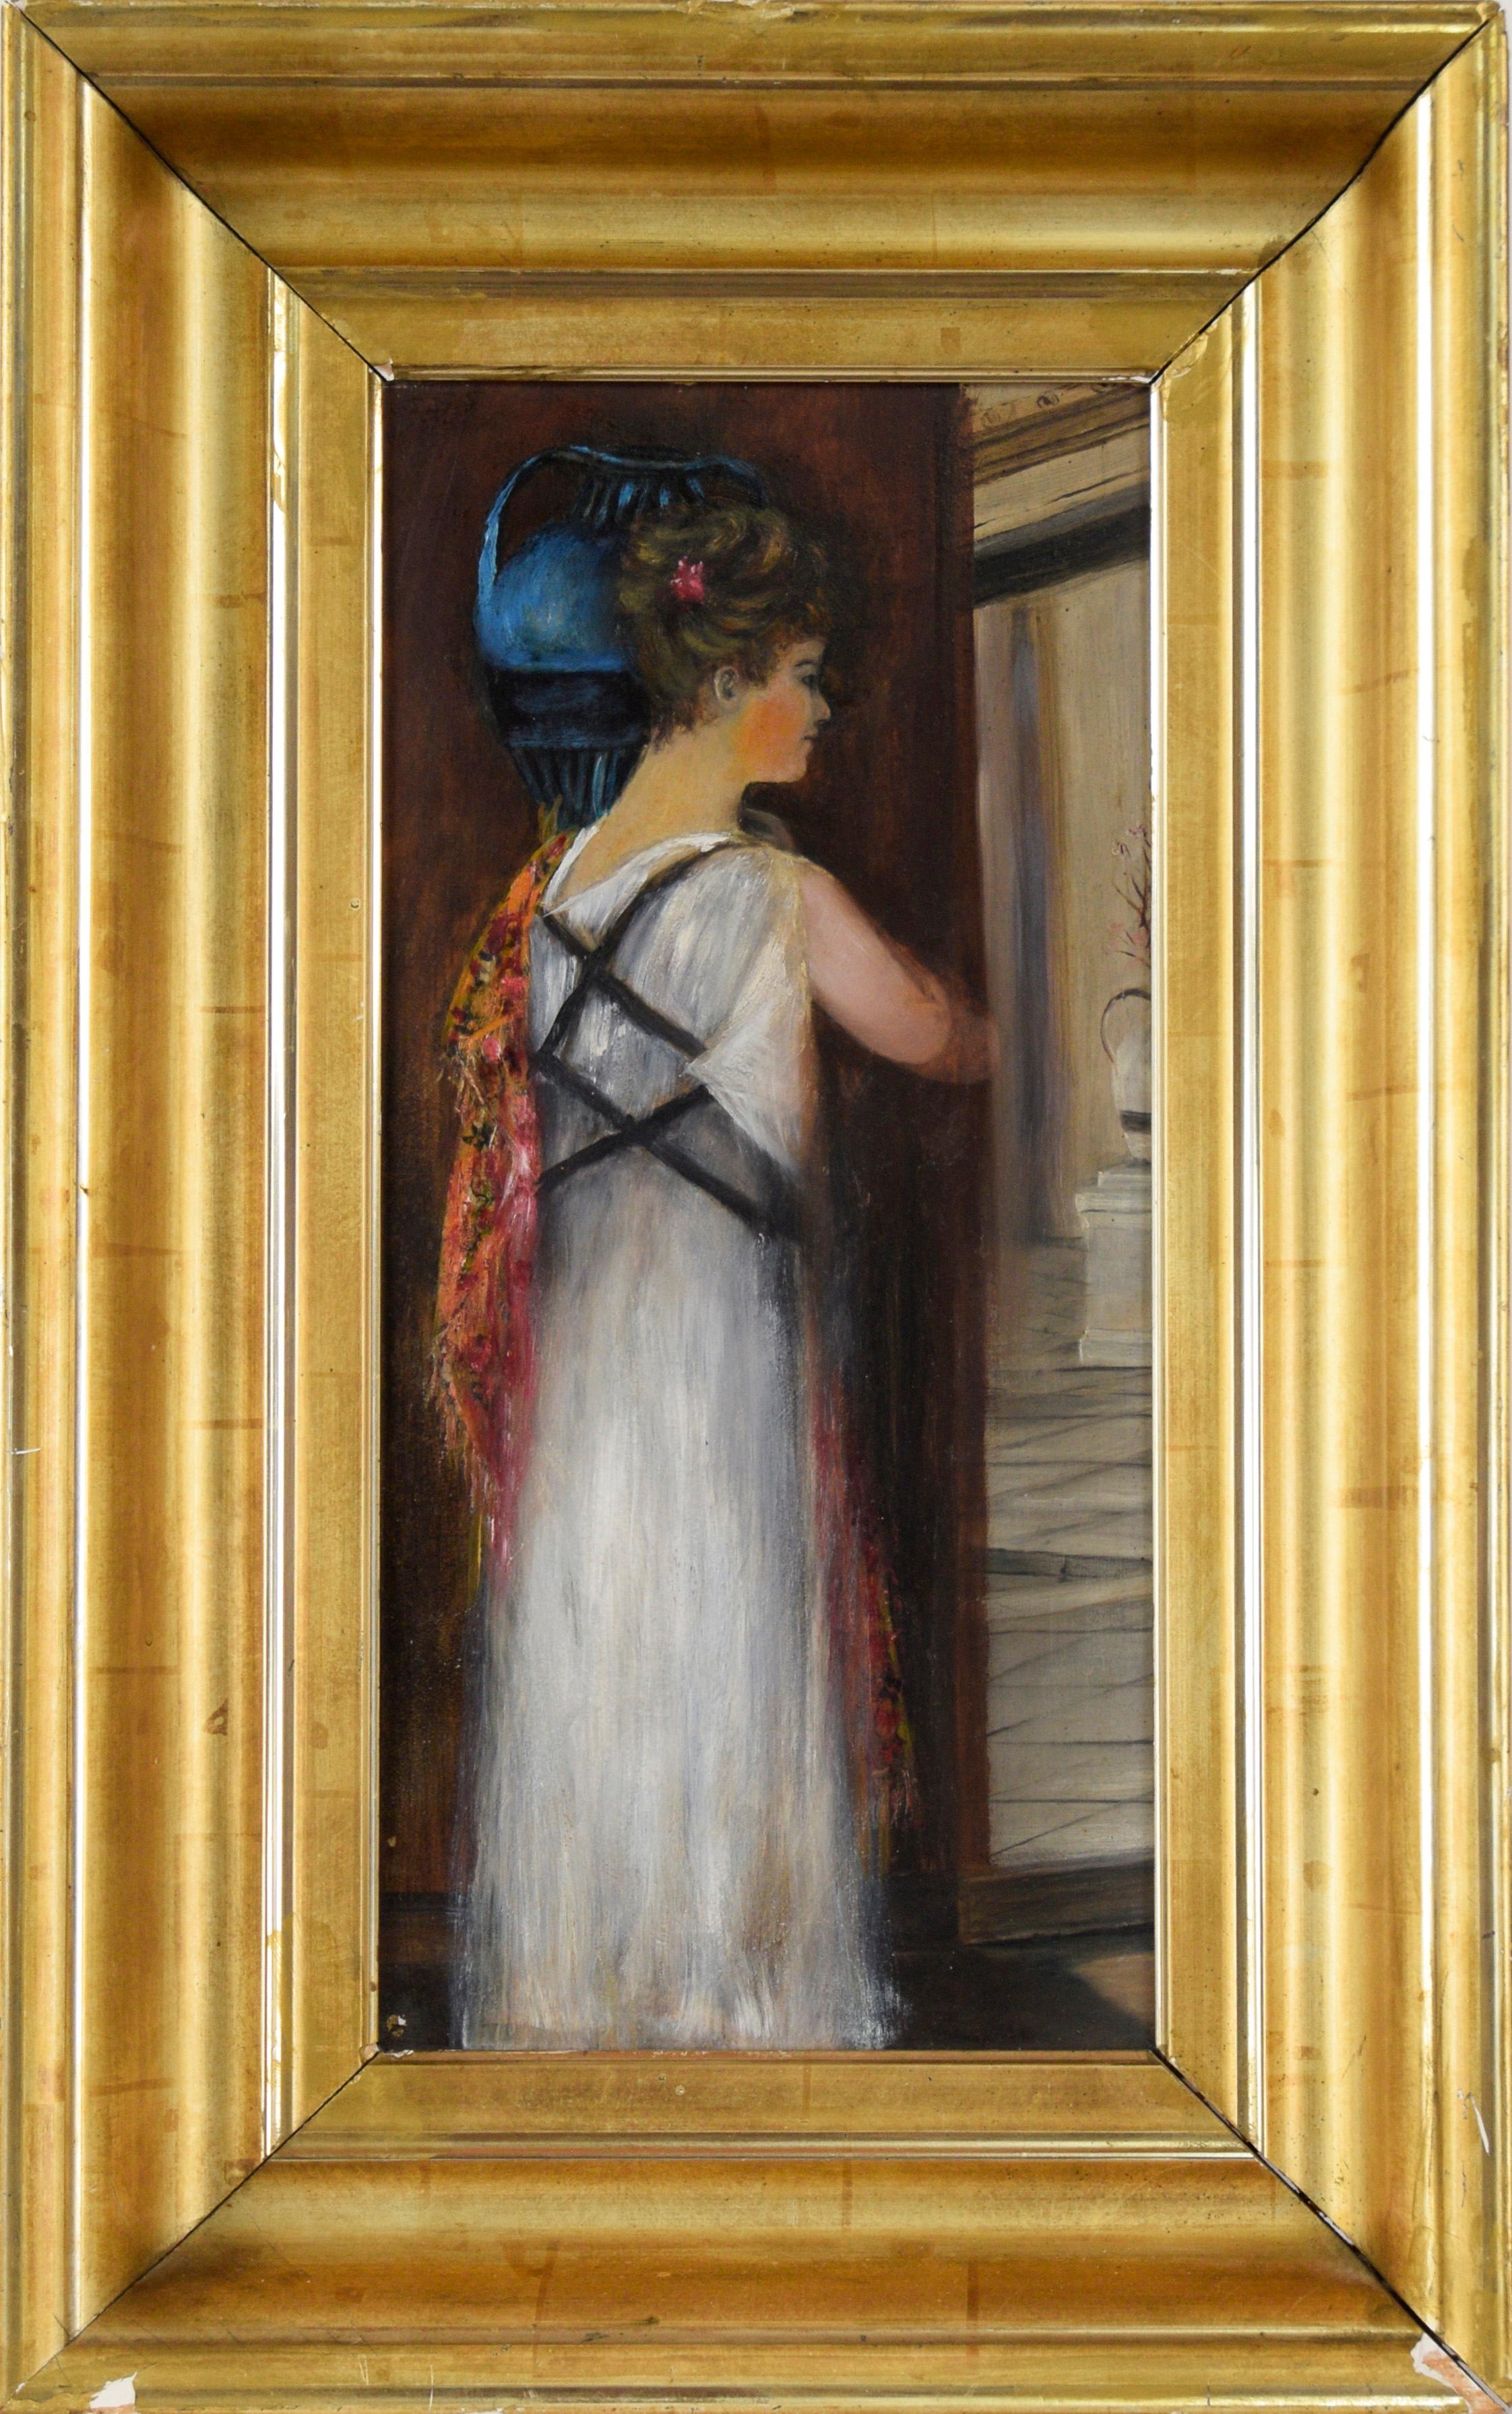 Femme athénienne transportant une jarre d'eau dans une robe blanche - Painting de 19th Century American School